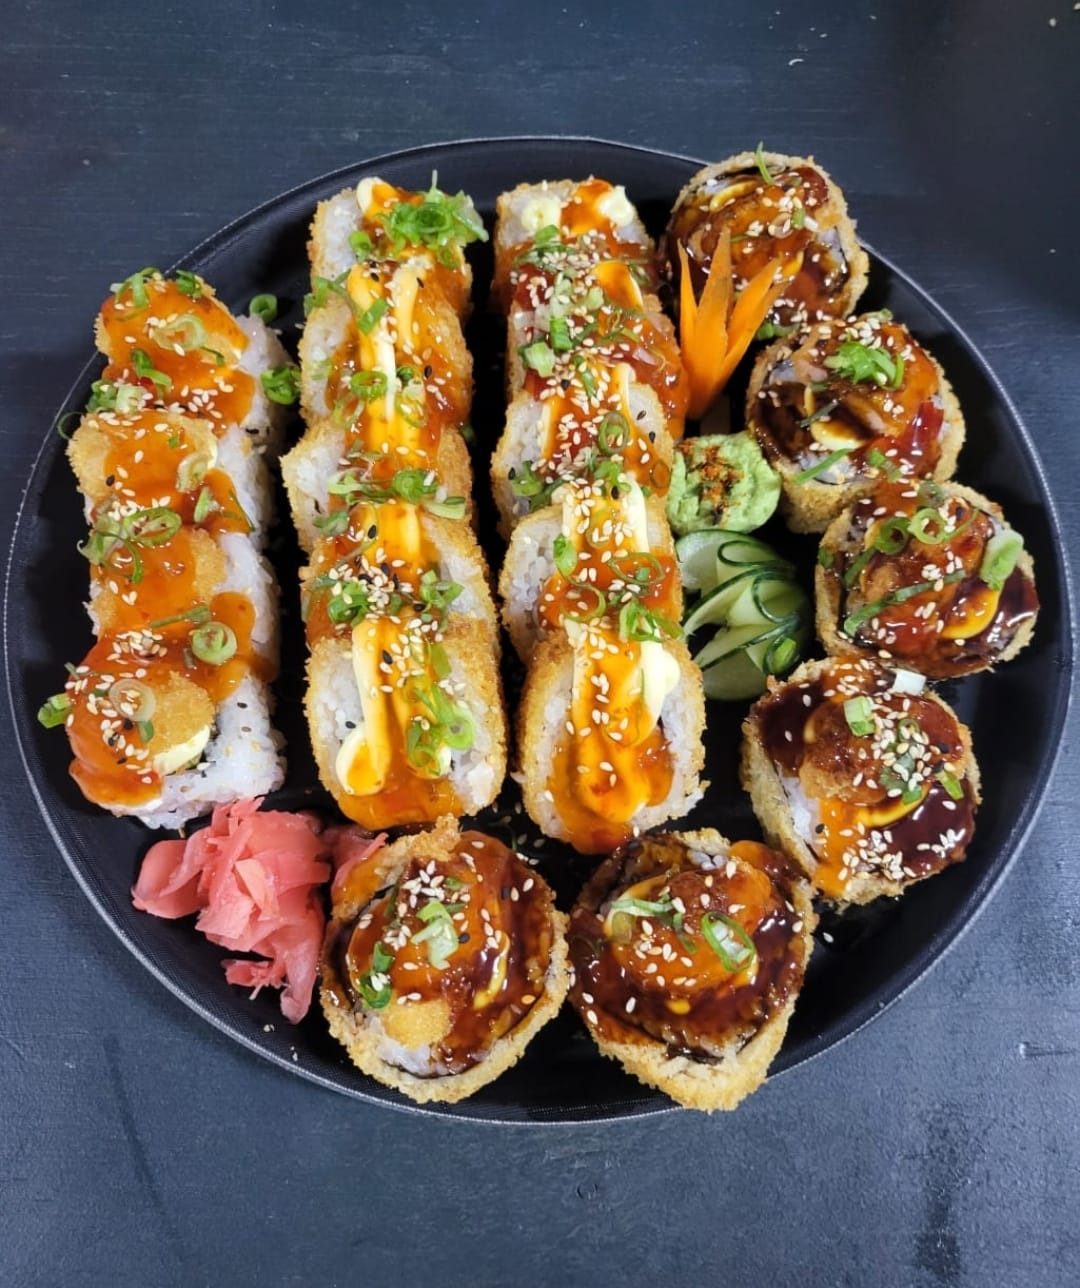 J & S sushi